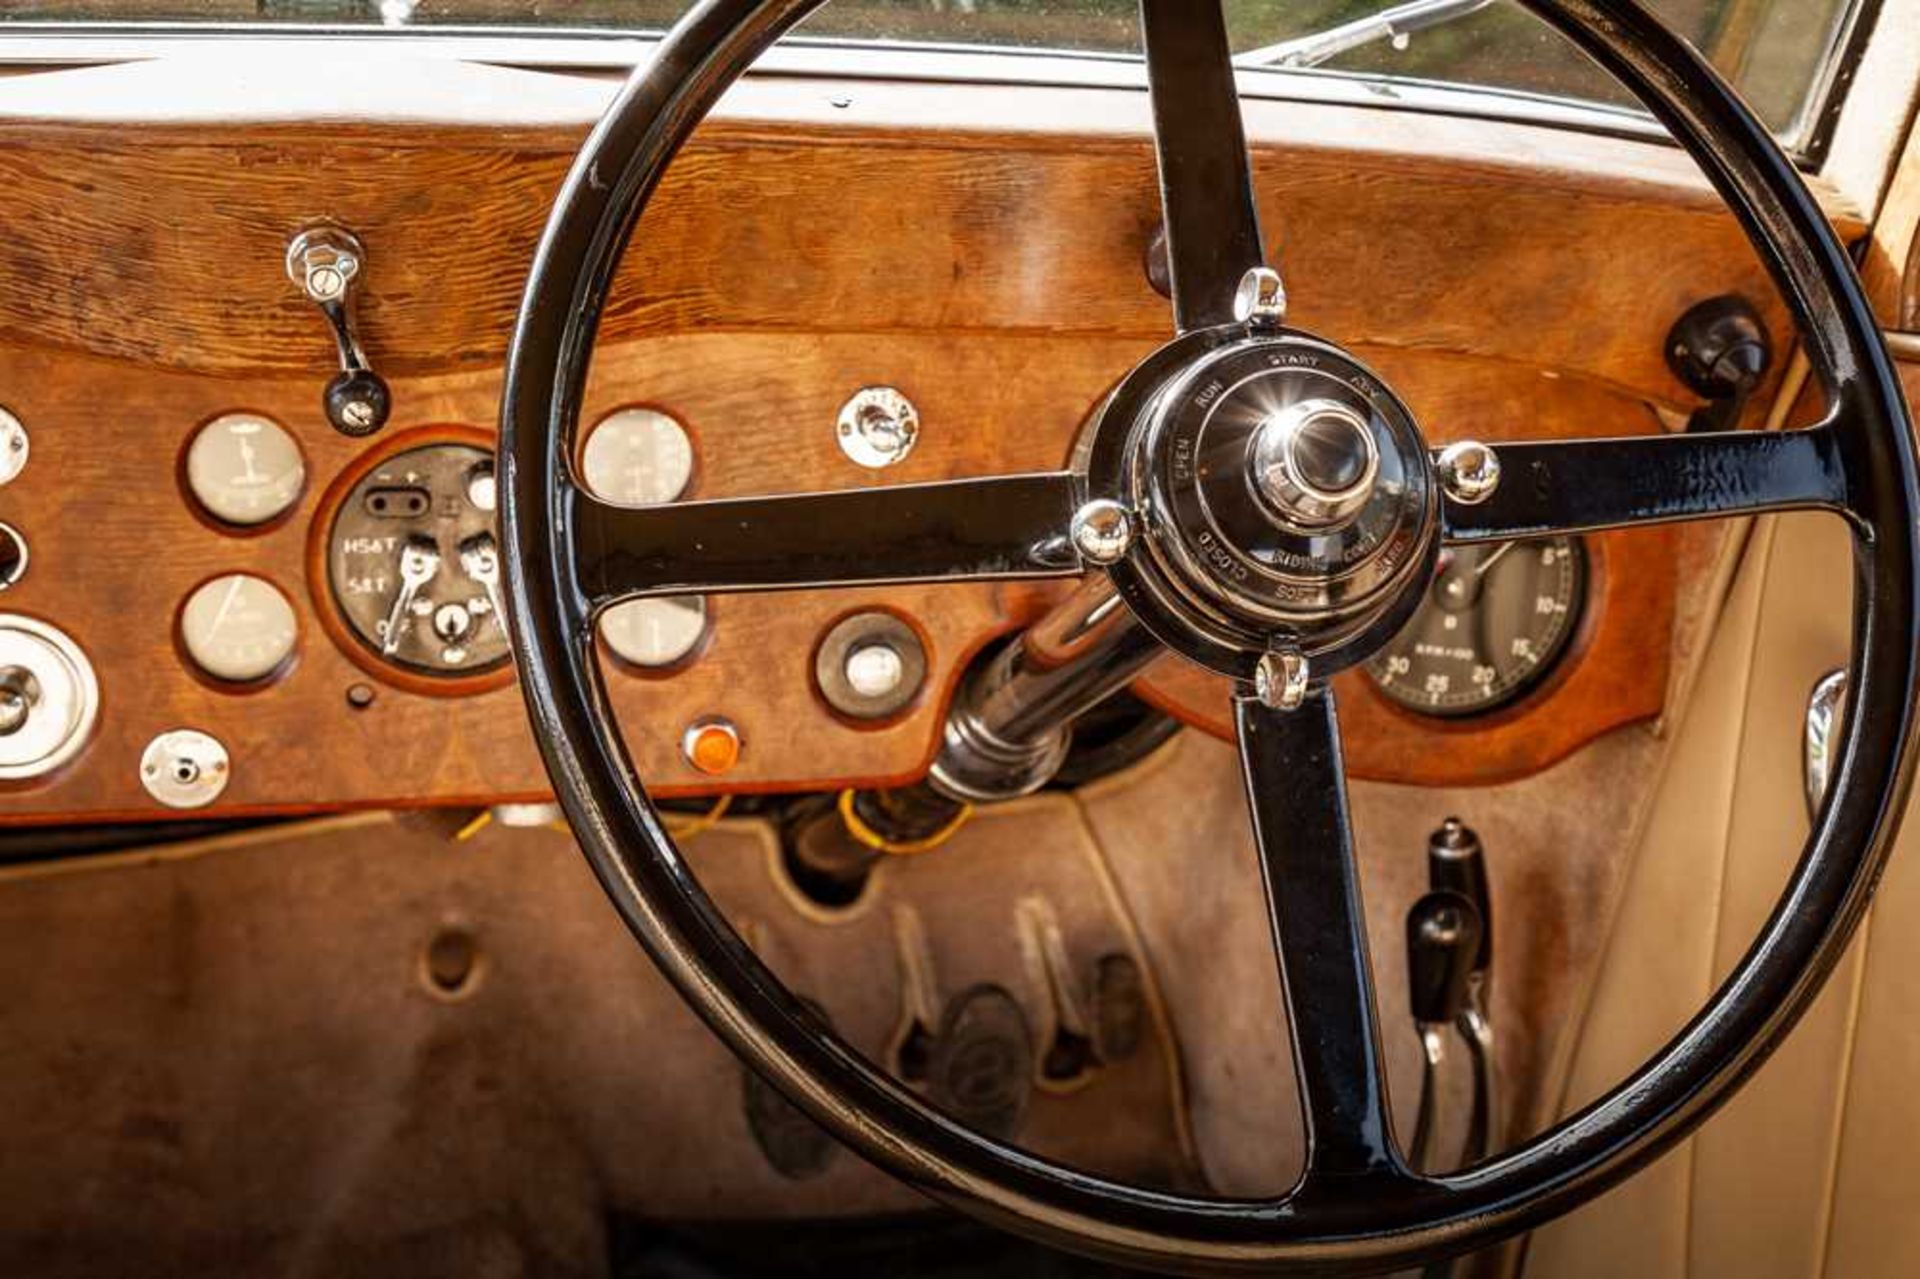 1937 Bentley 4.25 Litre Pillarless Sports Saloon Coachwork by Vanden Plas - Image 30 of 62